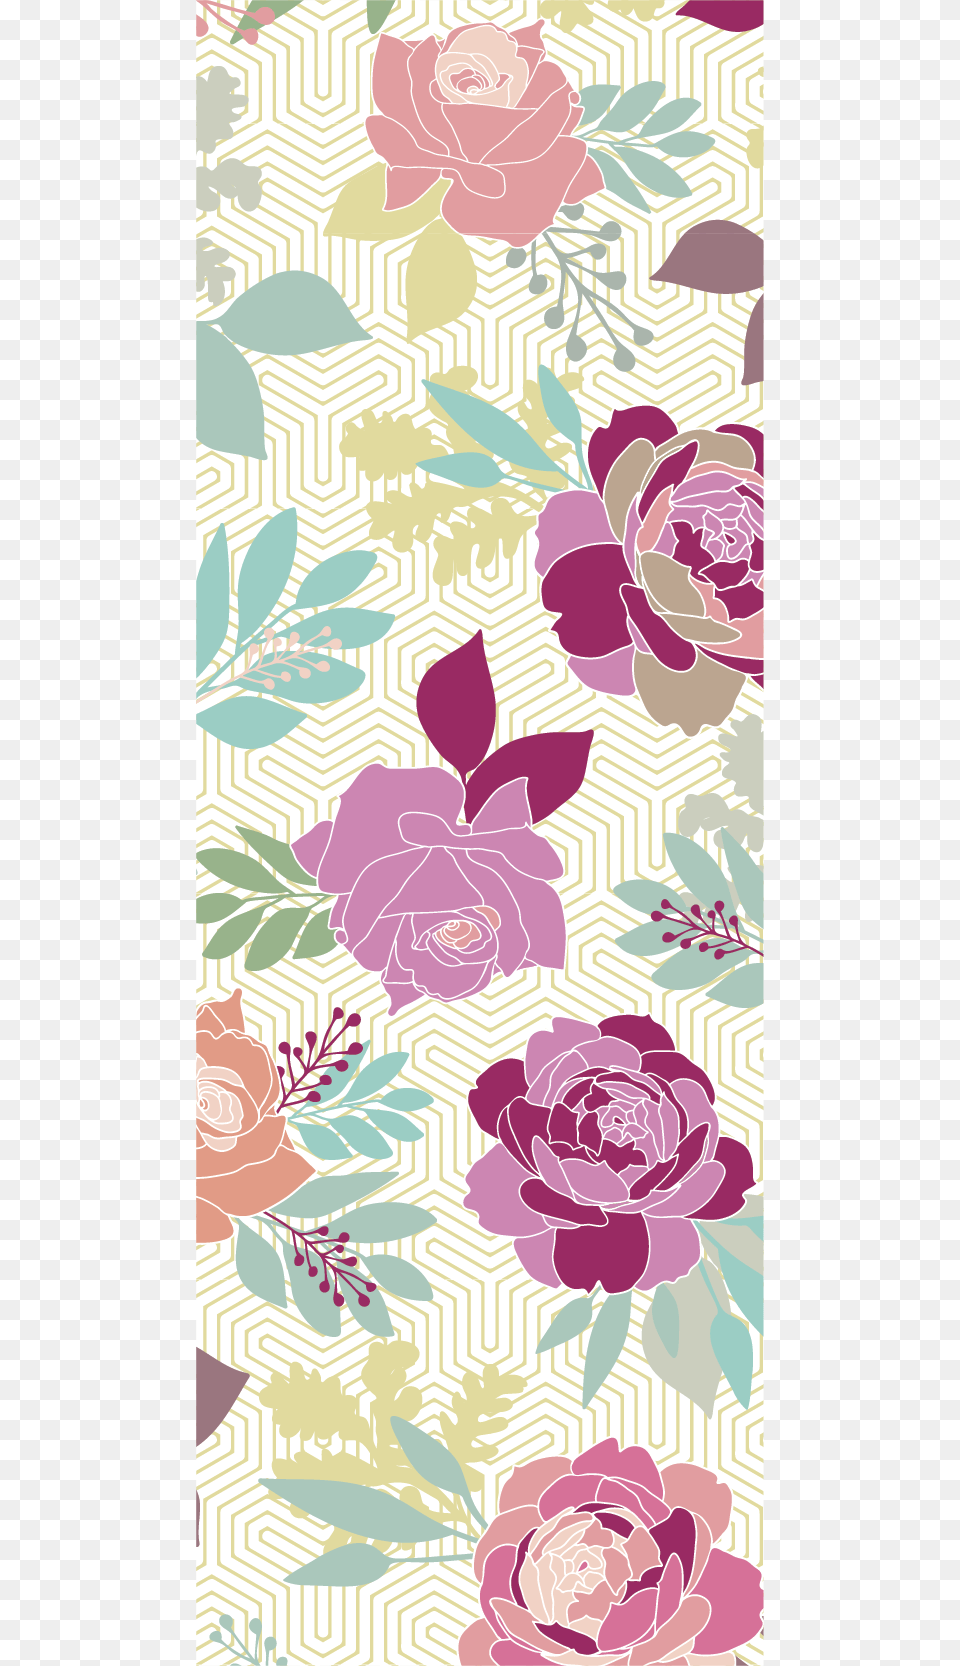 English Rose Garden Print By Lu Haddad Floribunda, Art, Floral Design, Graphics, Pattern Free Png Download